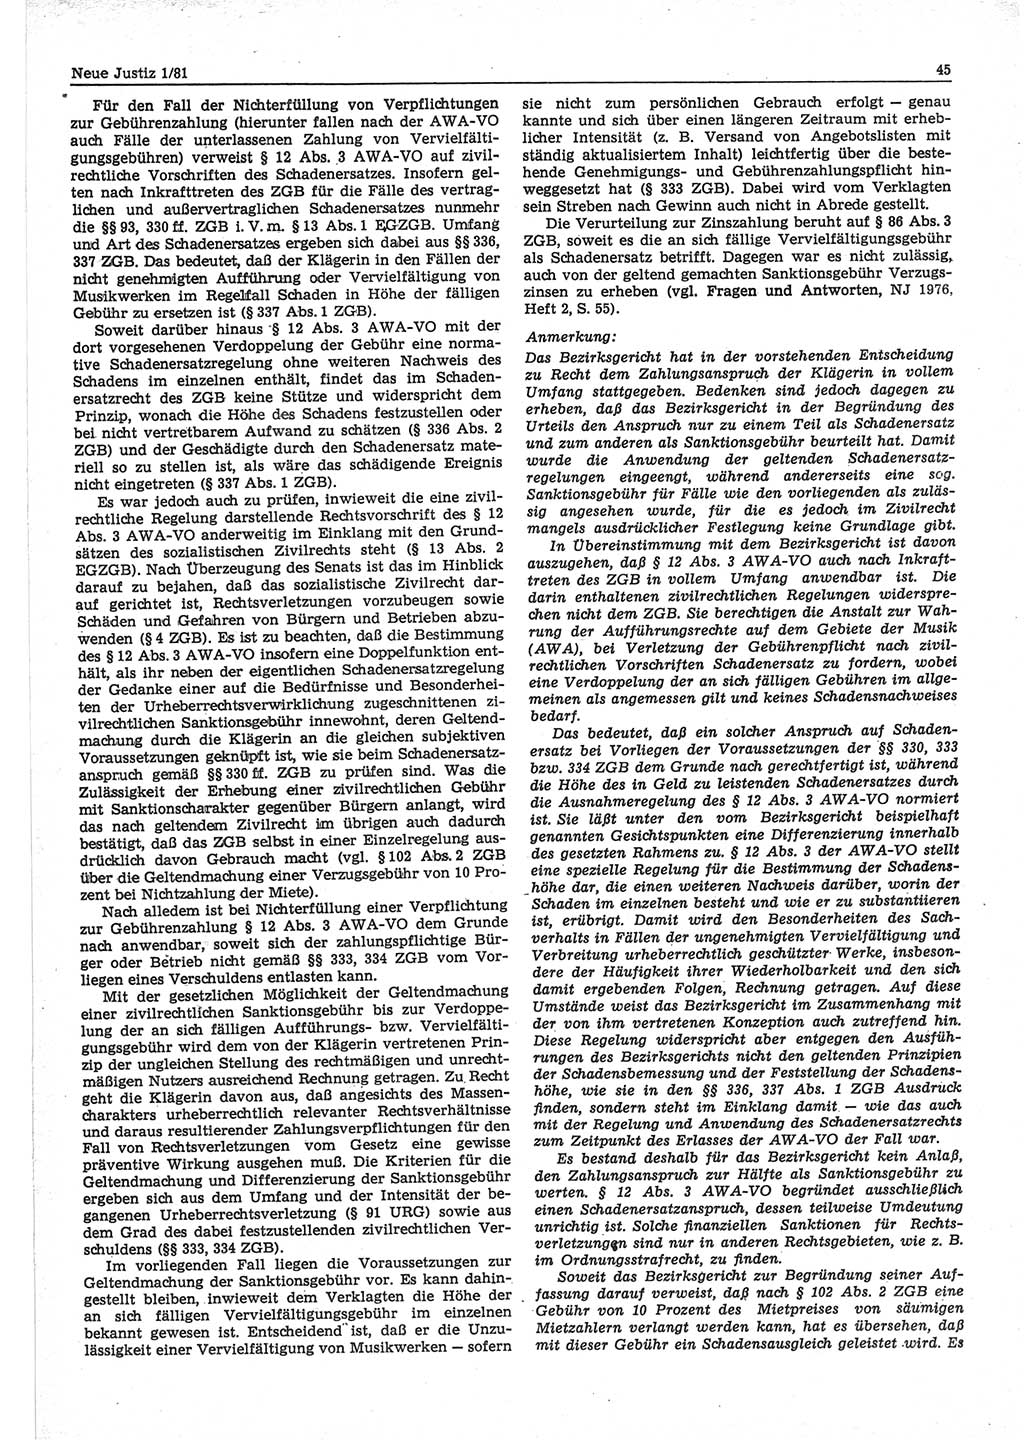 Neue Justiz (NJ), Zeitschrift für sozialistisches Recht und Gesetzlichkeit [Deutsche Demokratische Republik (DDR)], 35. Jahrgang 1981, Seite 45 (NJ DDR 1981, S. 45)